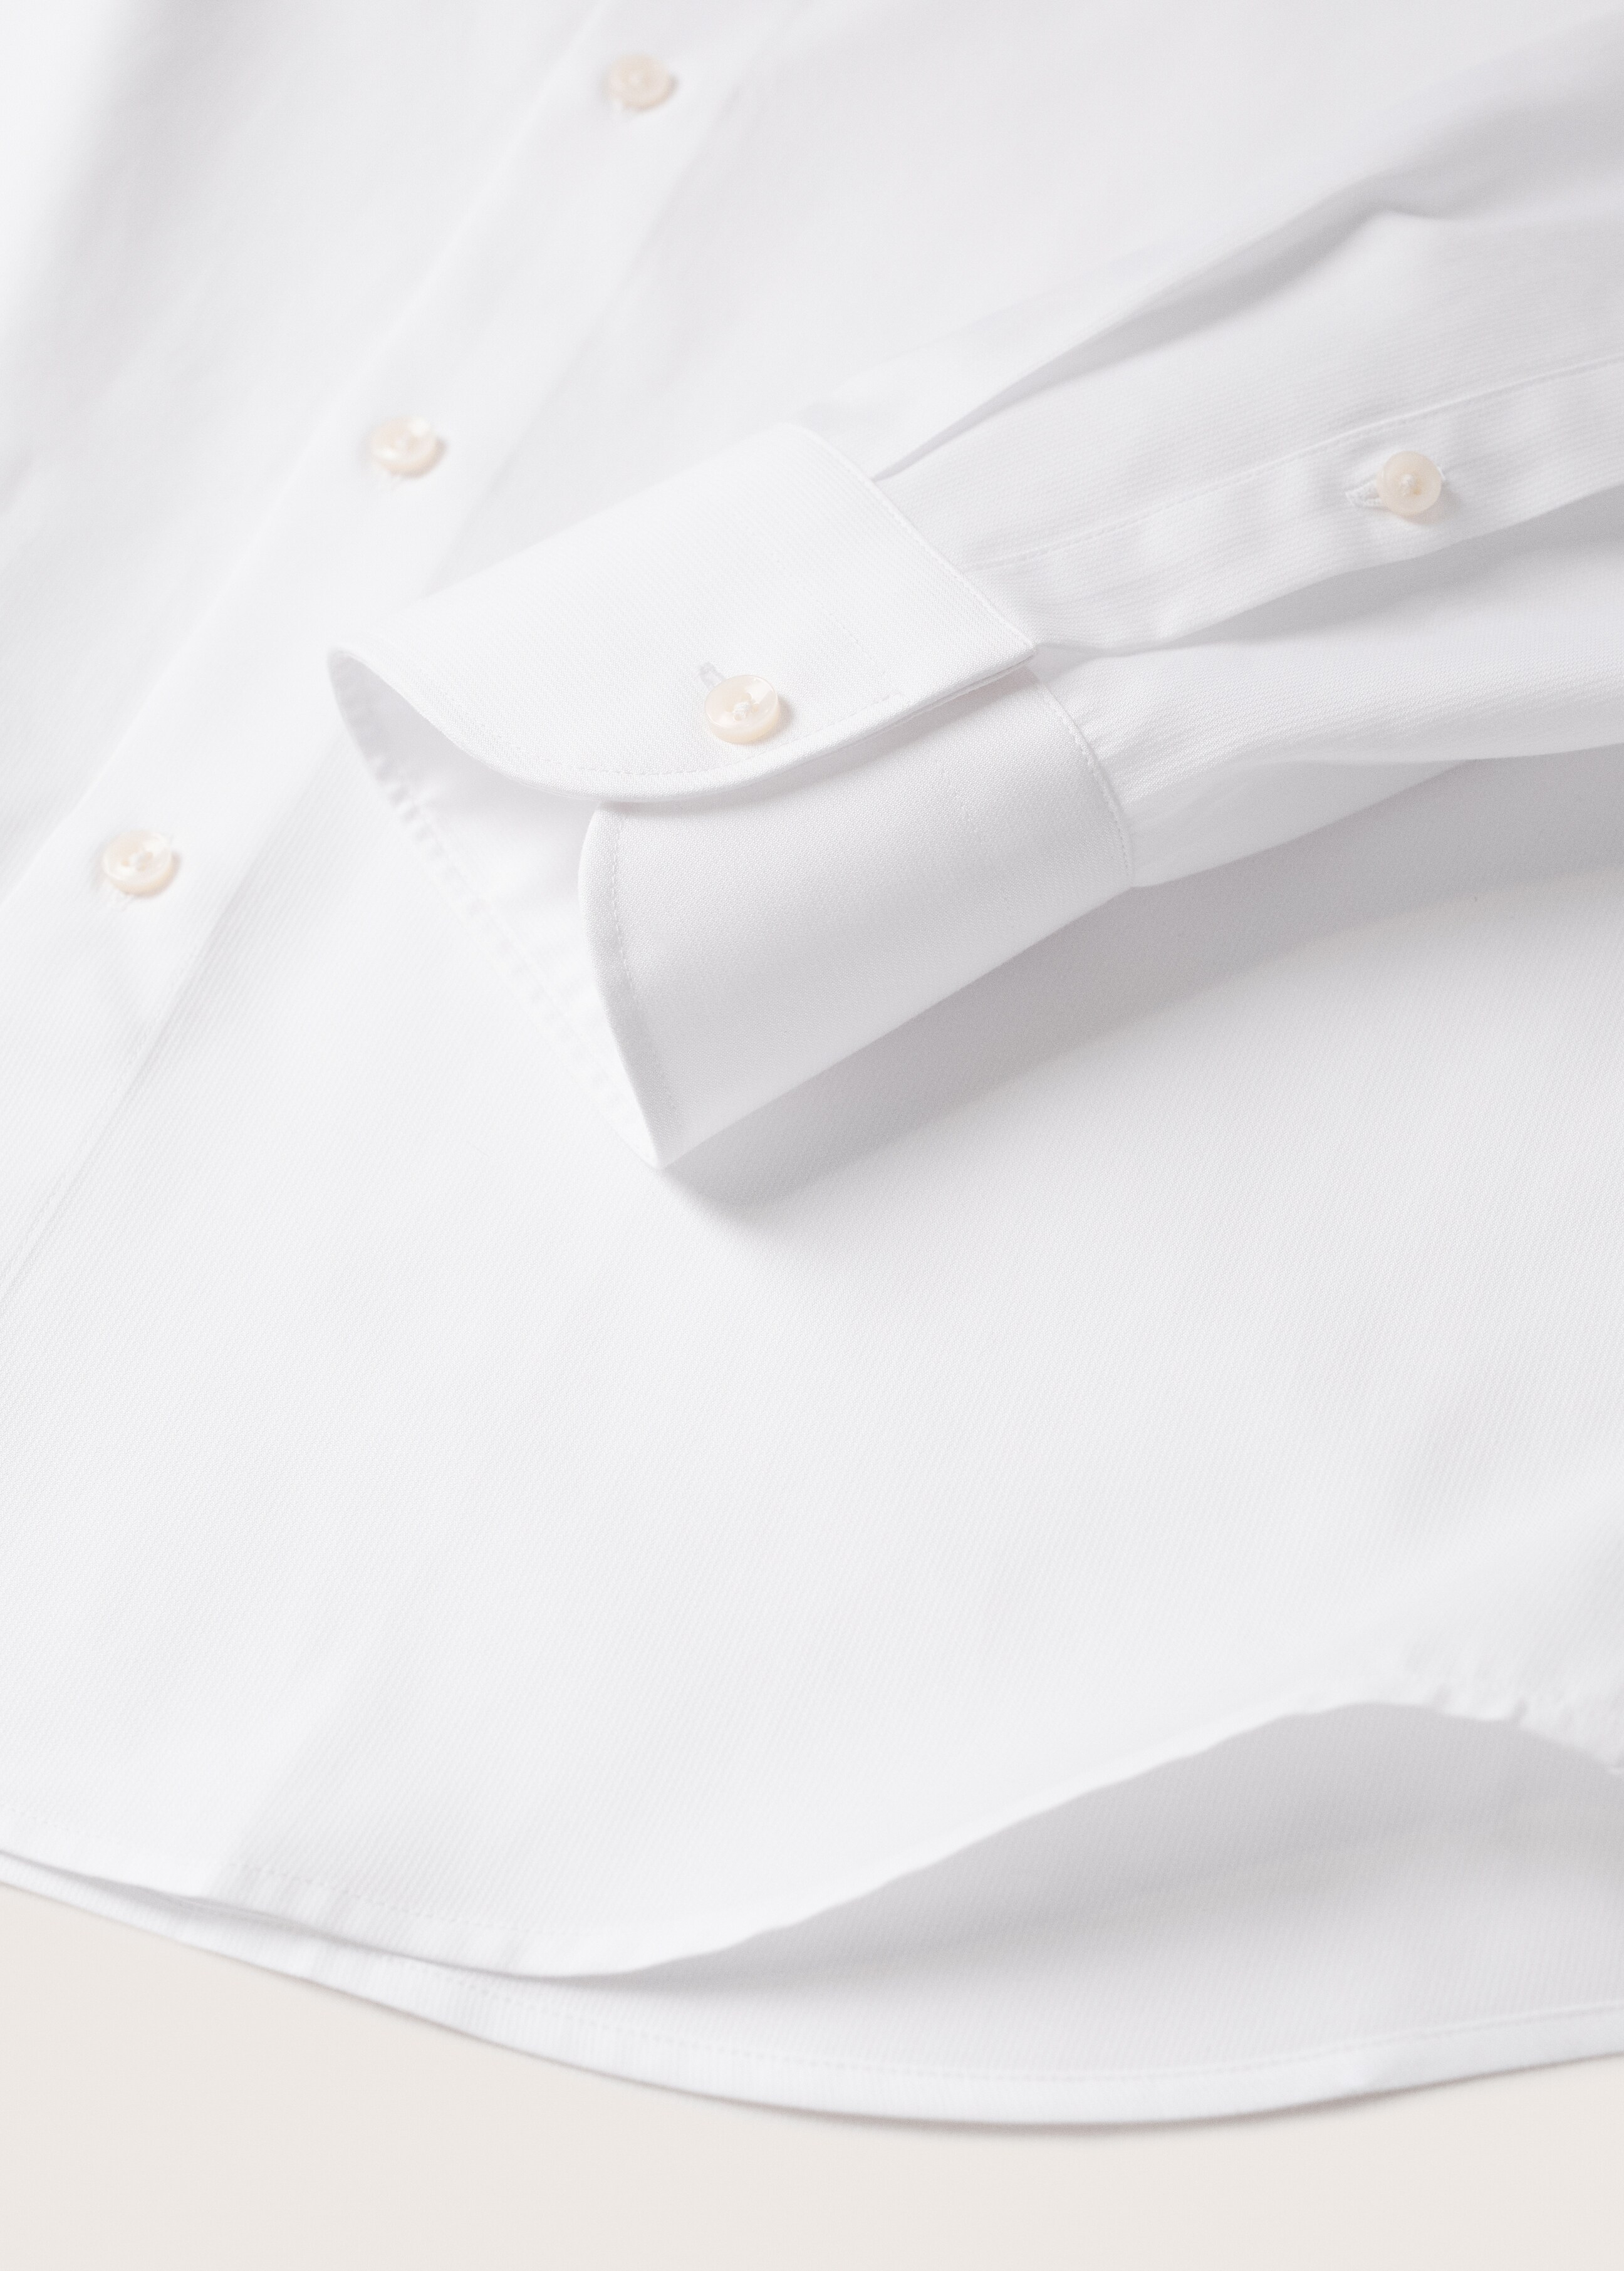 Slim fit cotton suit shirt - Details of the article 7